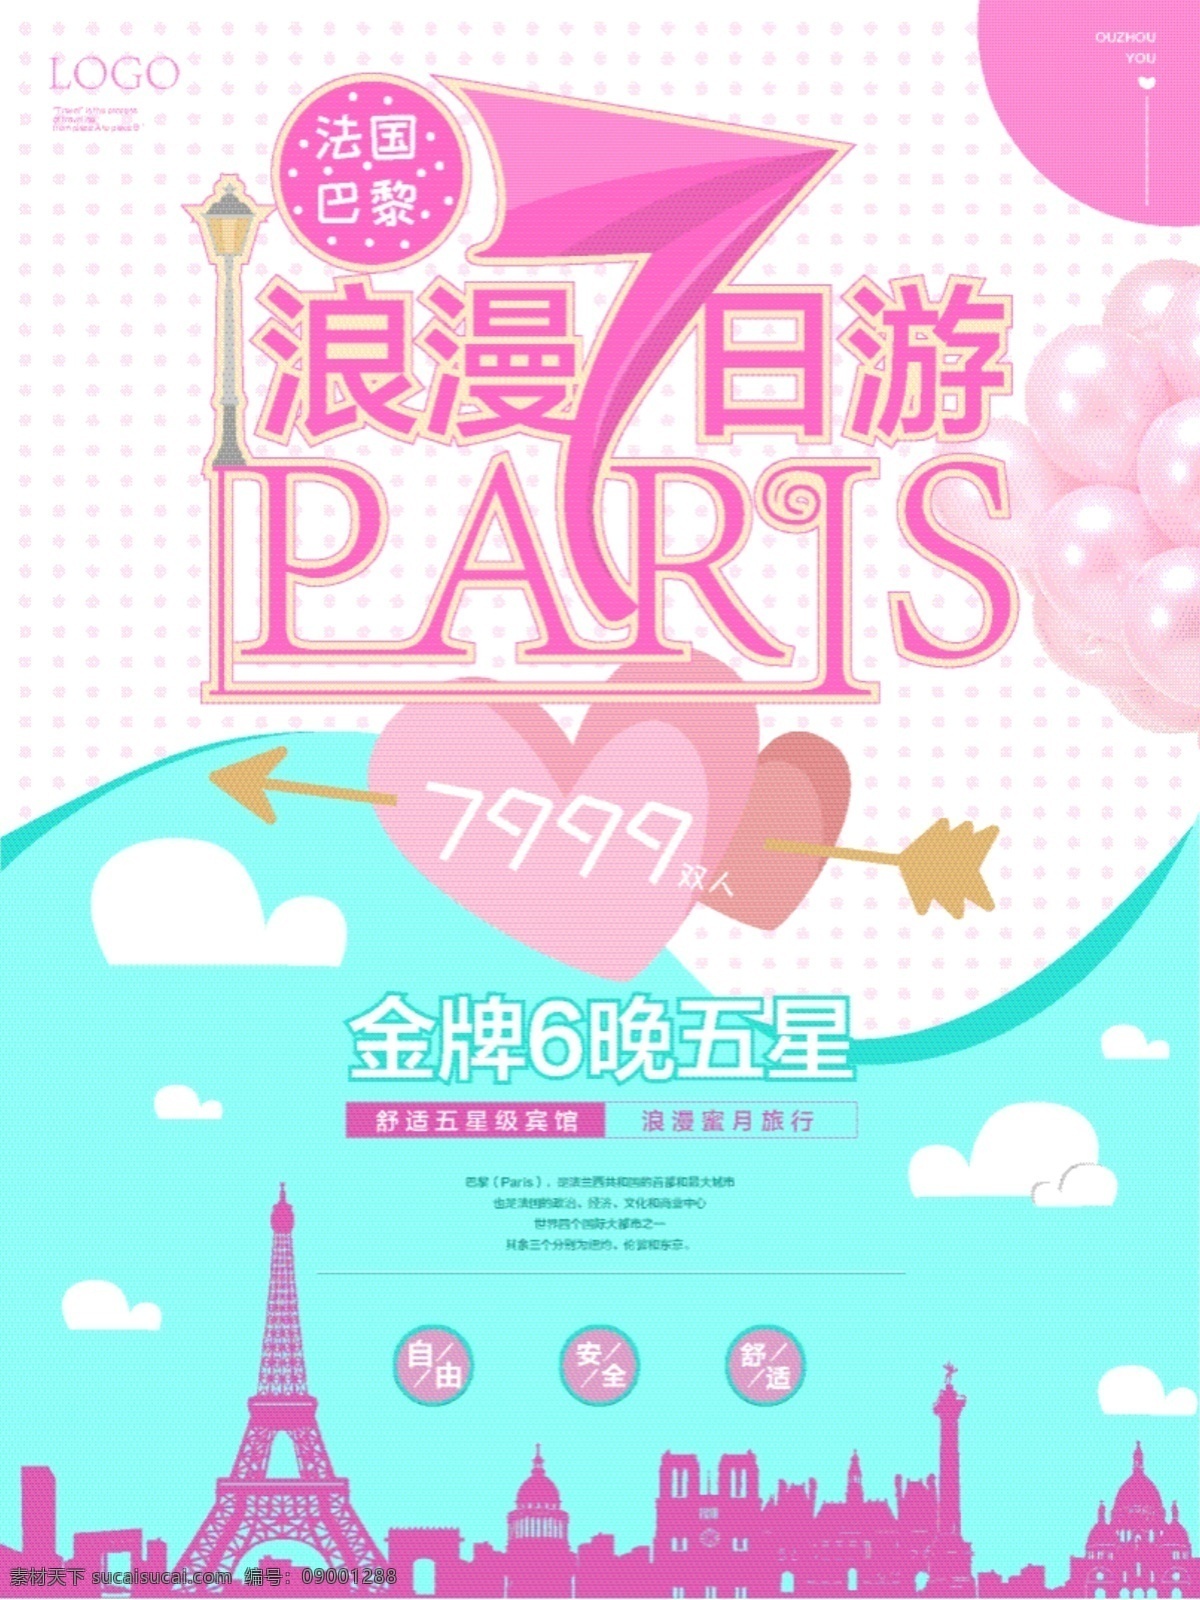 浪漫 巴黎 欧洲旅游 海报 创意字体 气球 城市剪影 七日游 蓝绿 斑点底纹 粉色 白色云朵